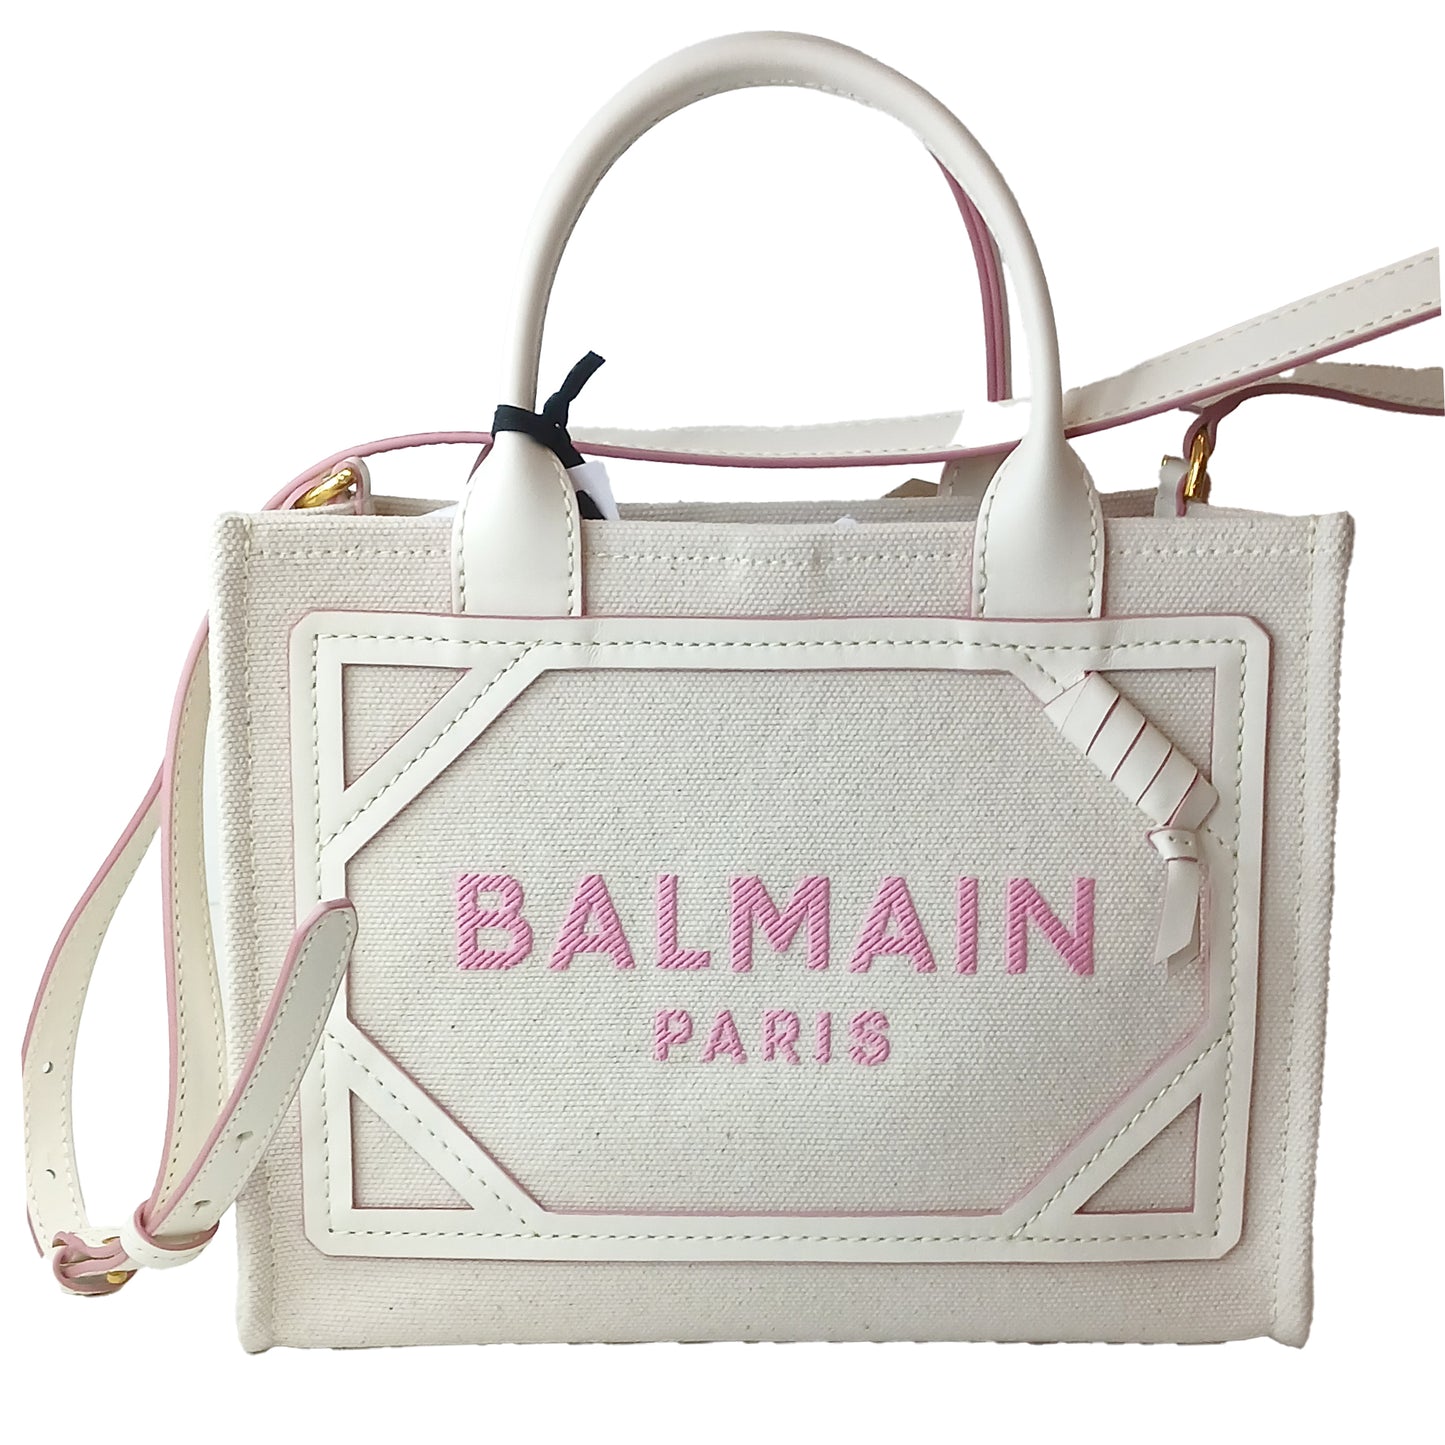 BalMain Pink Tote Bag